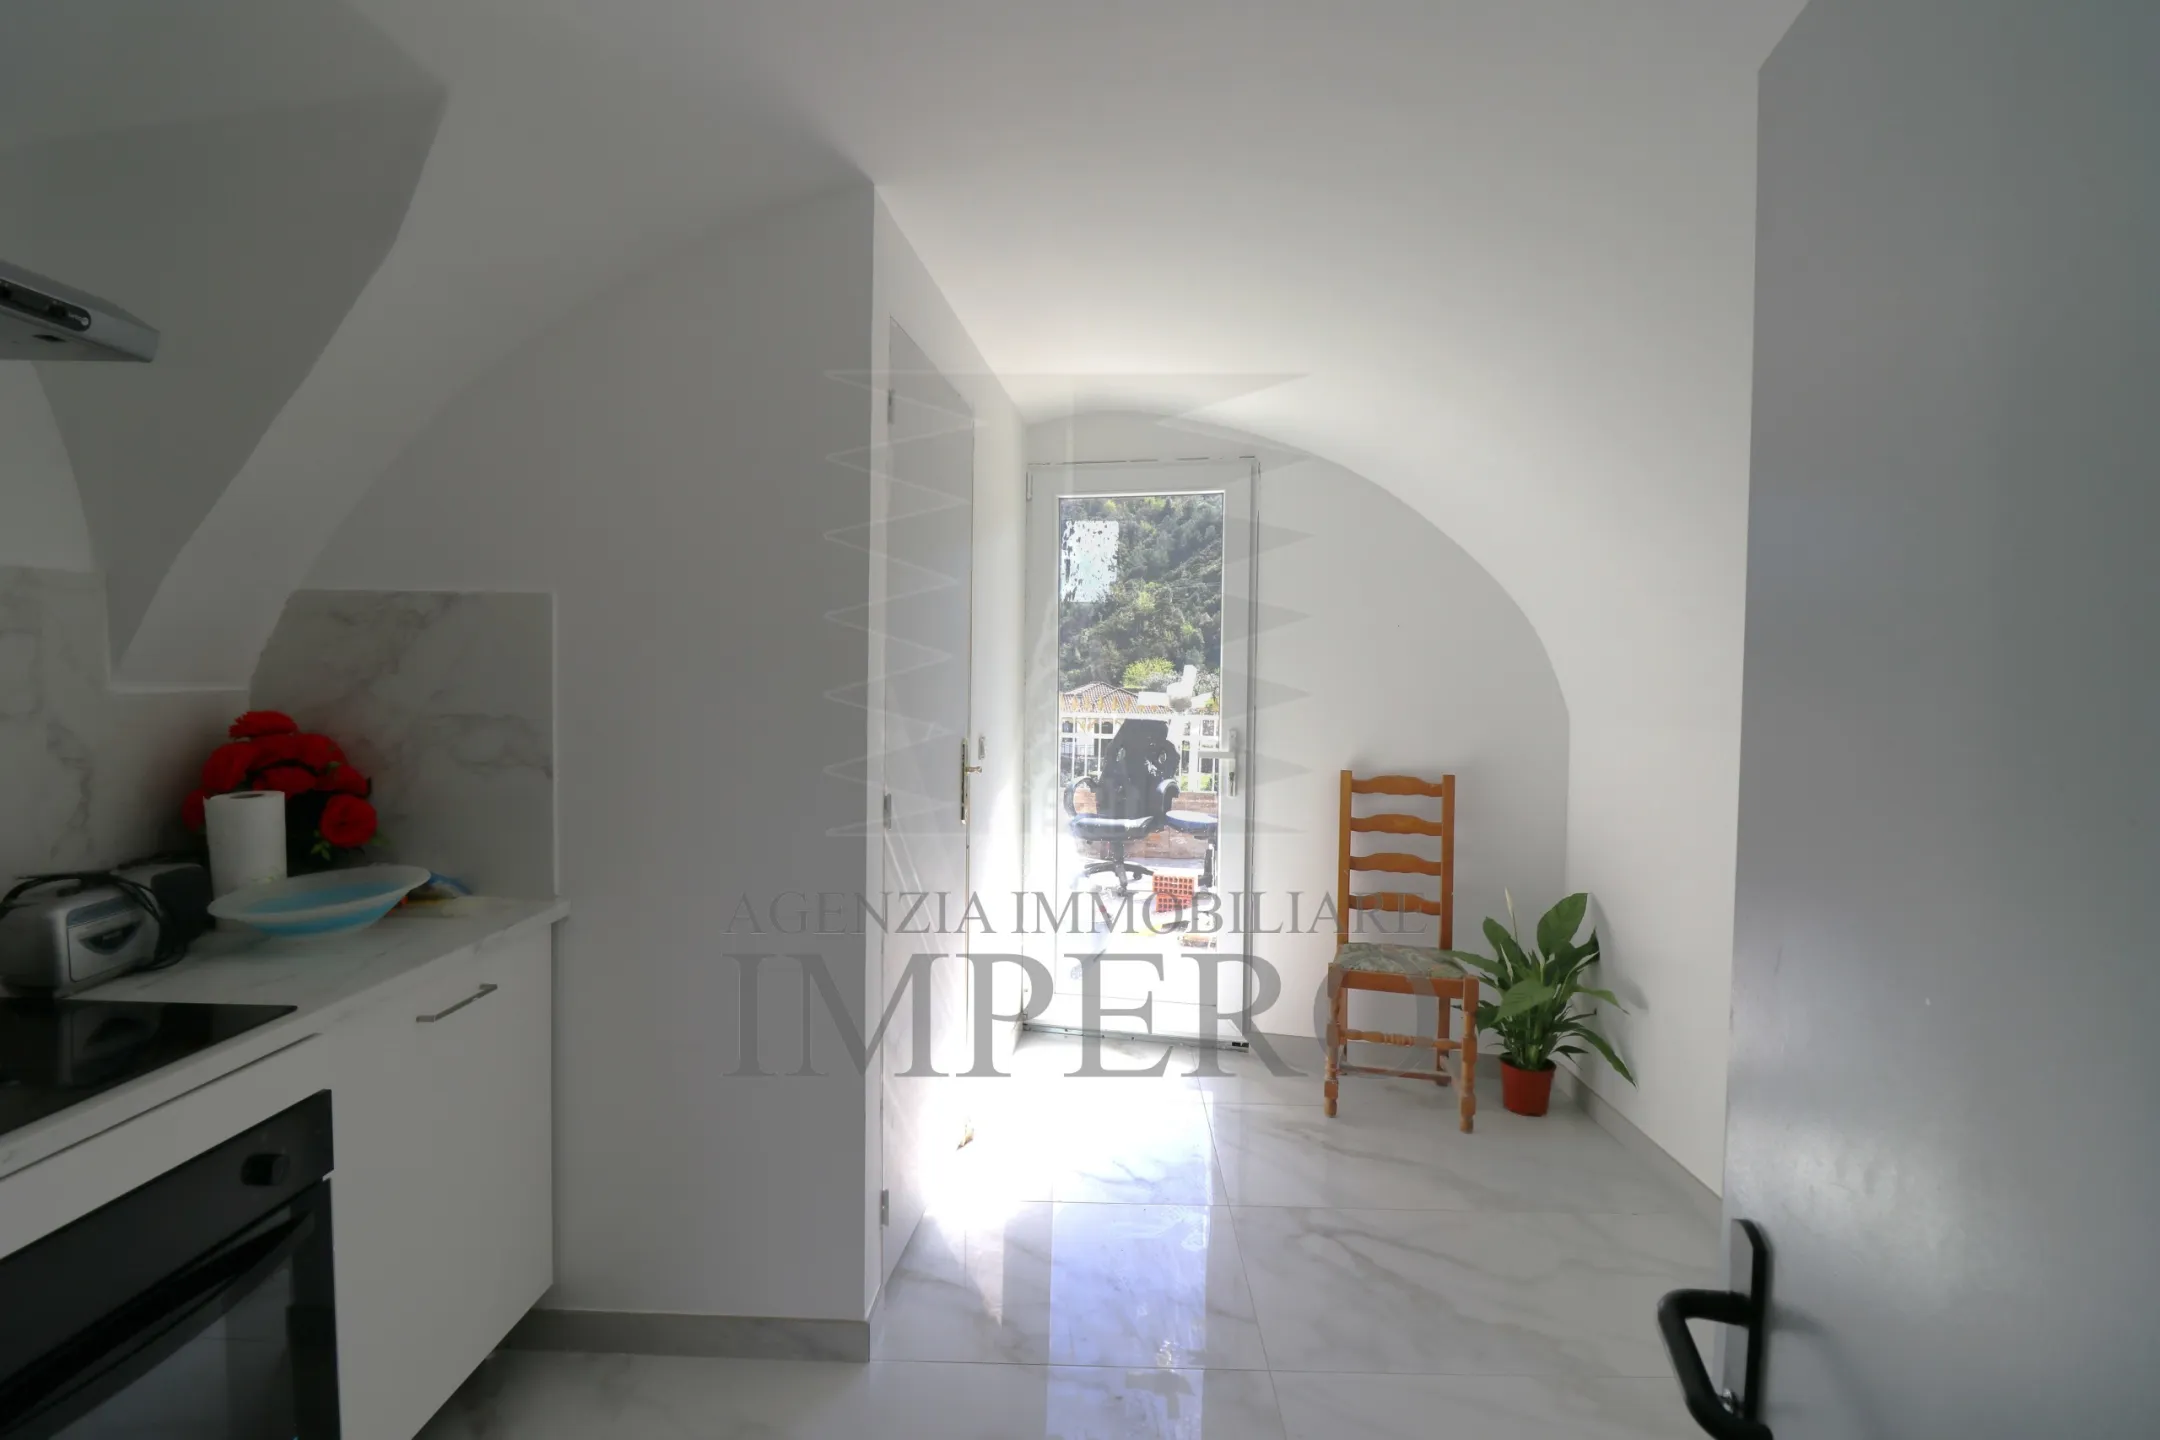 Immagine per Porzione di casa in vendita a Ventimiglia strada Case Cardi